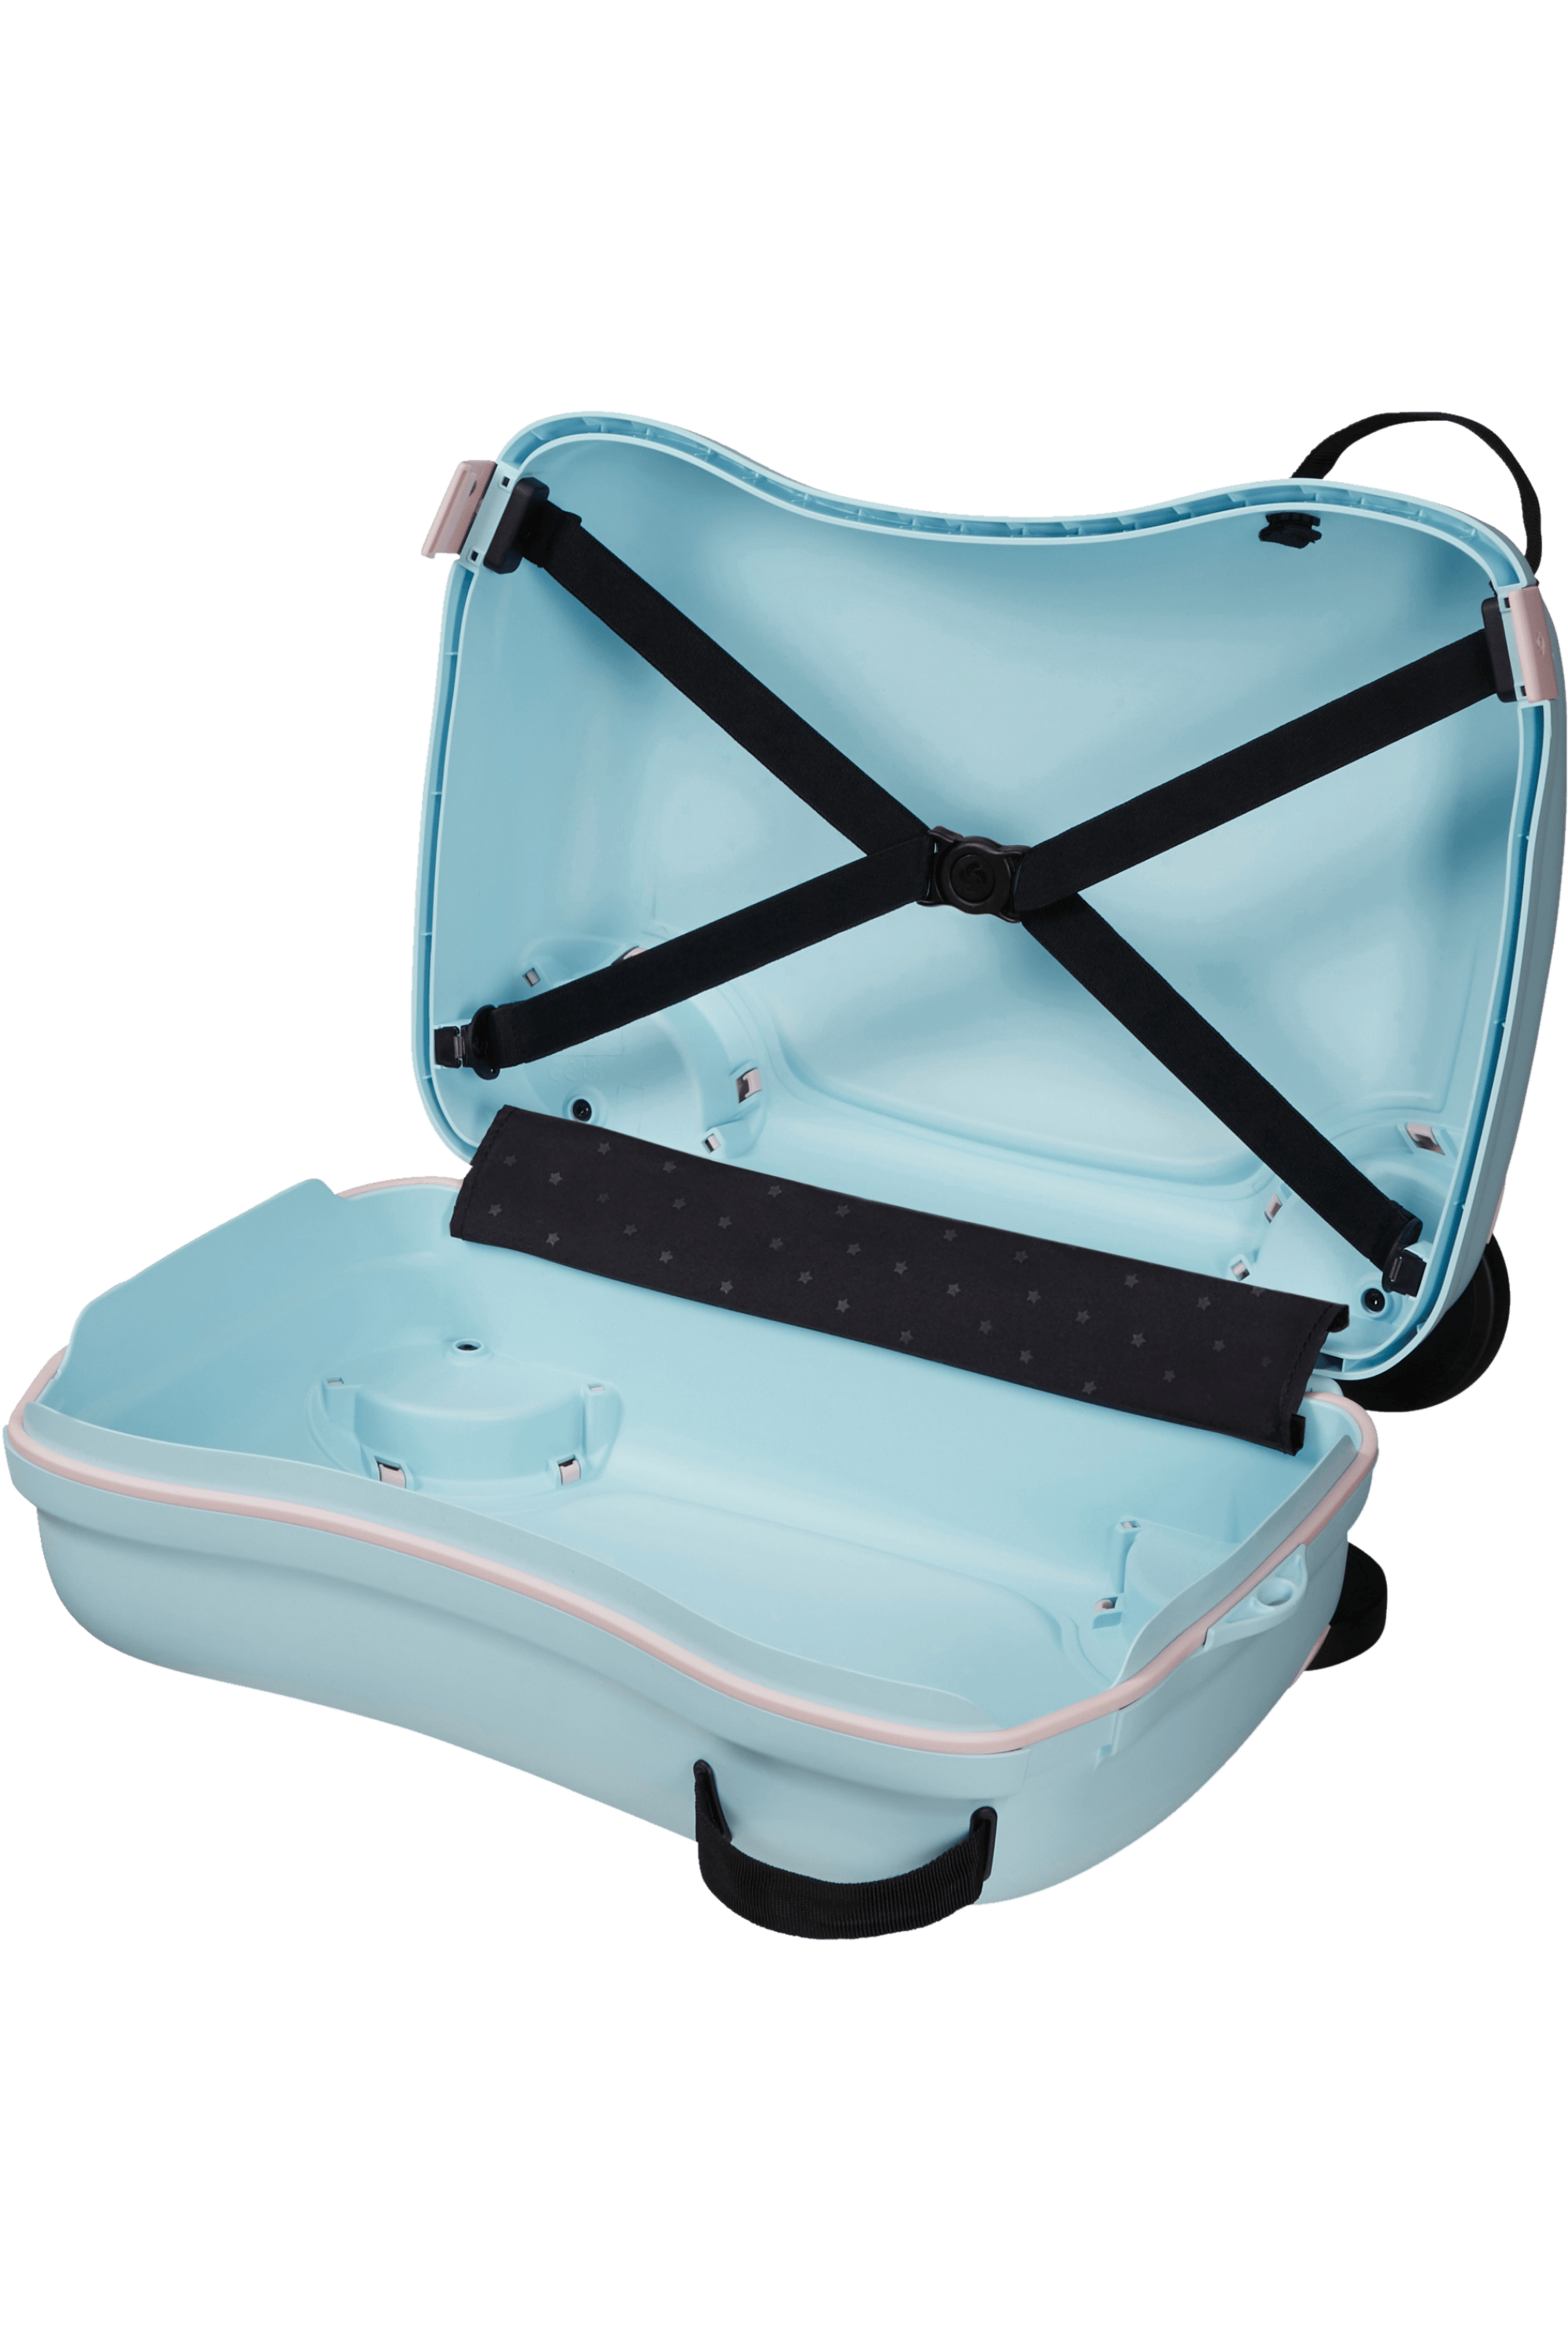 Kinder Auto Koffer mit fernbedienung Kinder Reise Gepäck Koffer